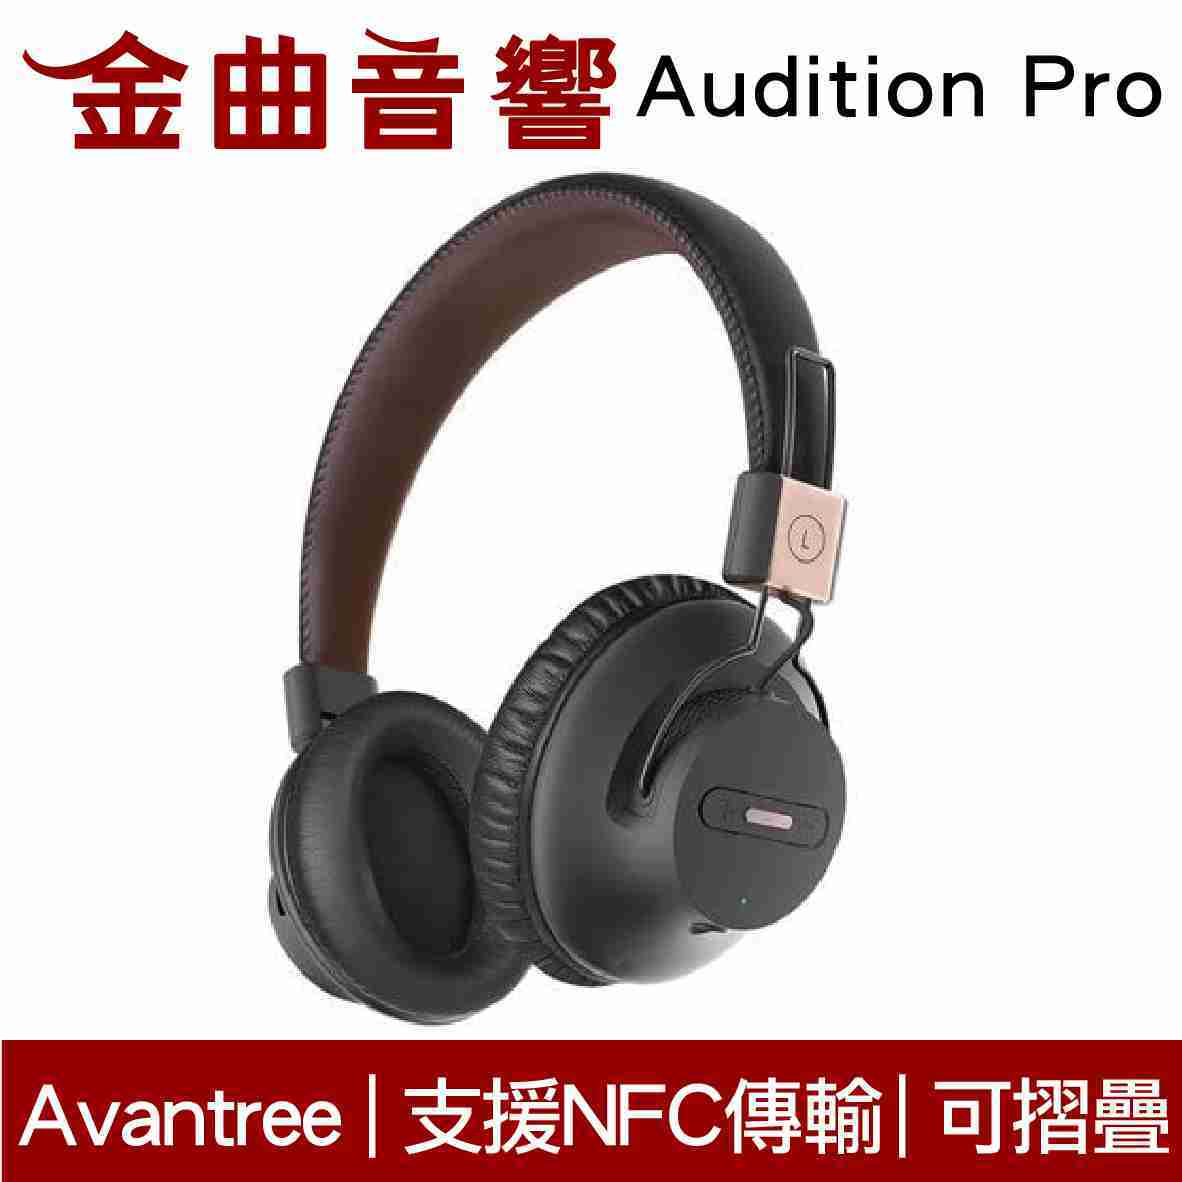 Avantree Audition Pro 無線 藍芽 NFC 超低延遲 AS9P 耳罩式耳機 | 金曲音響